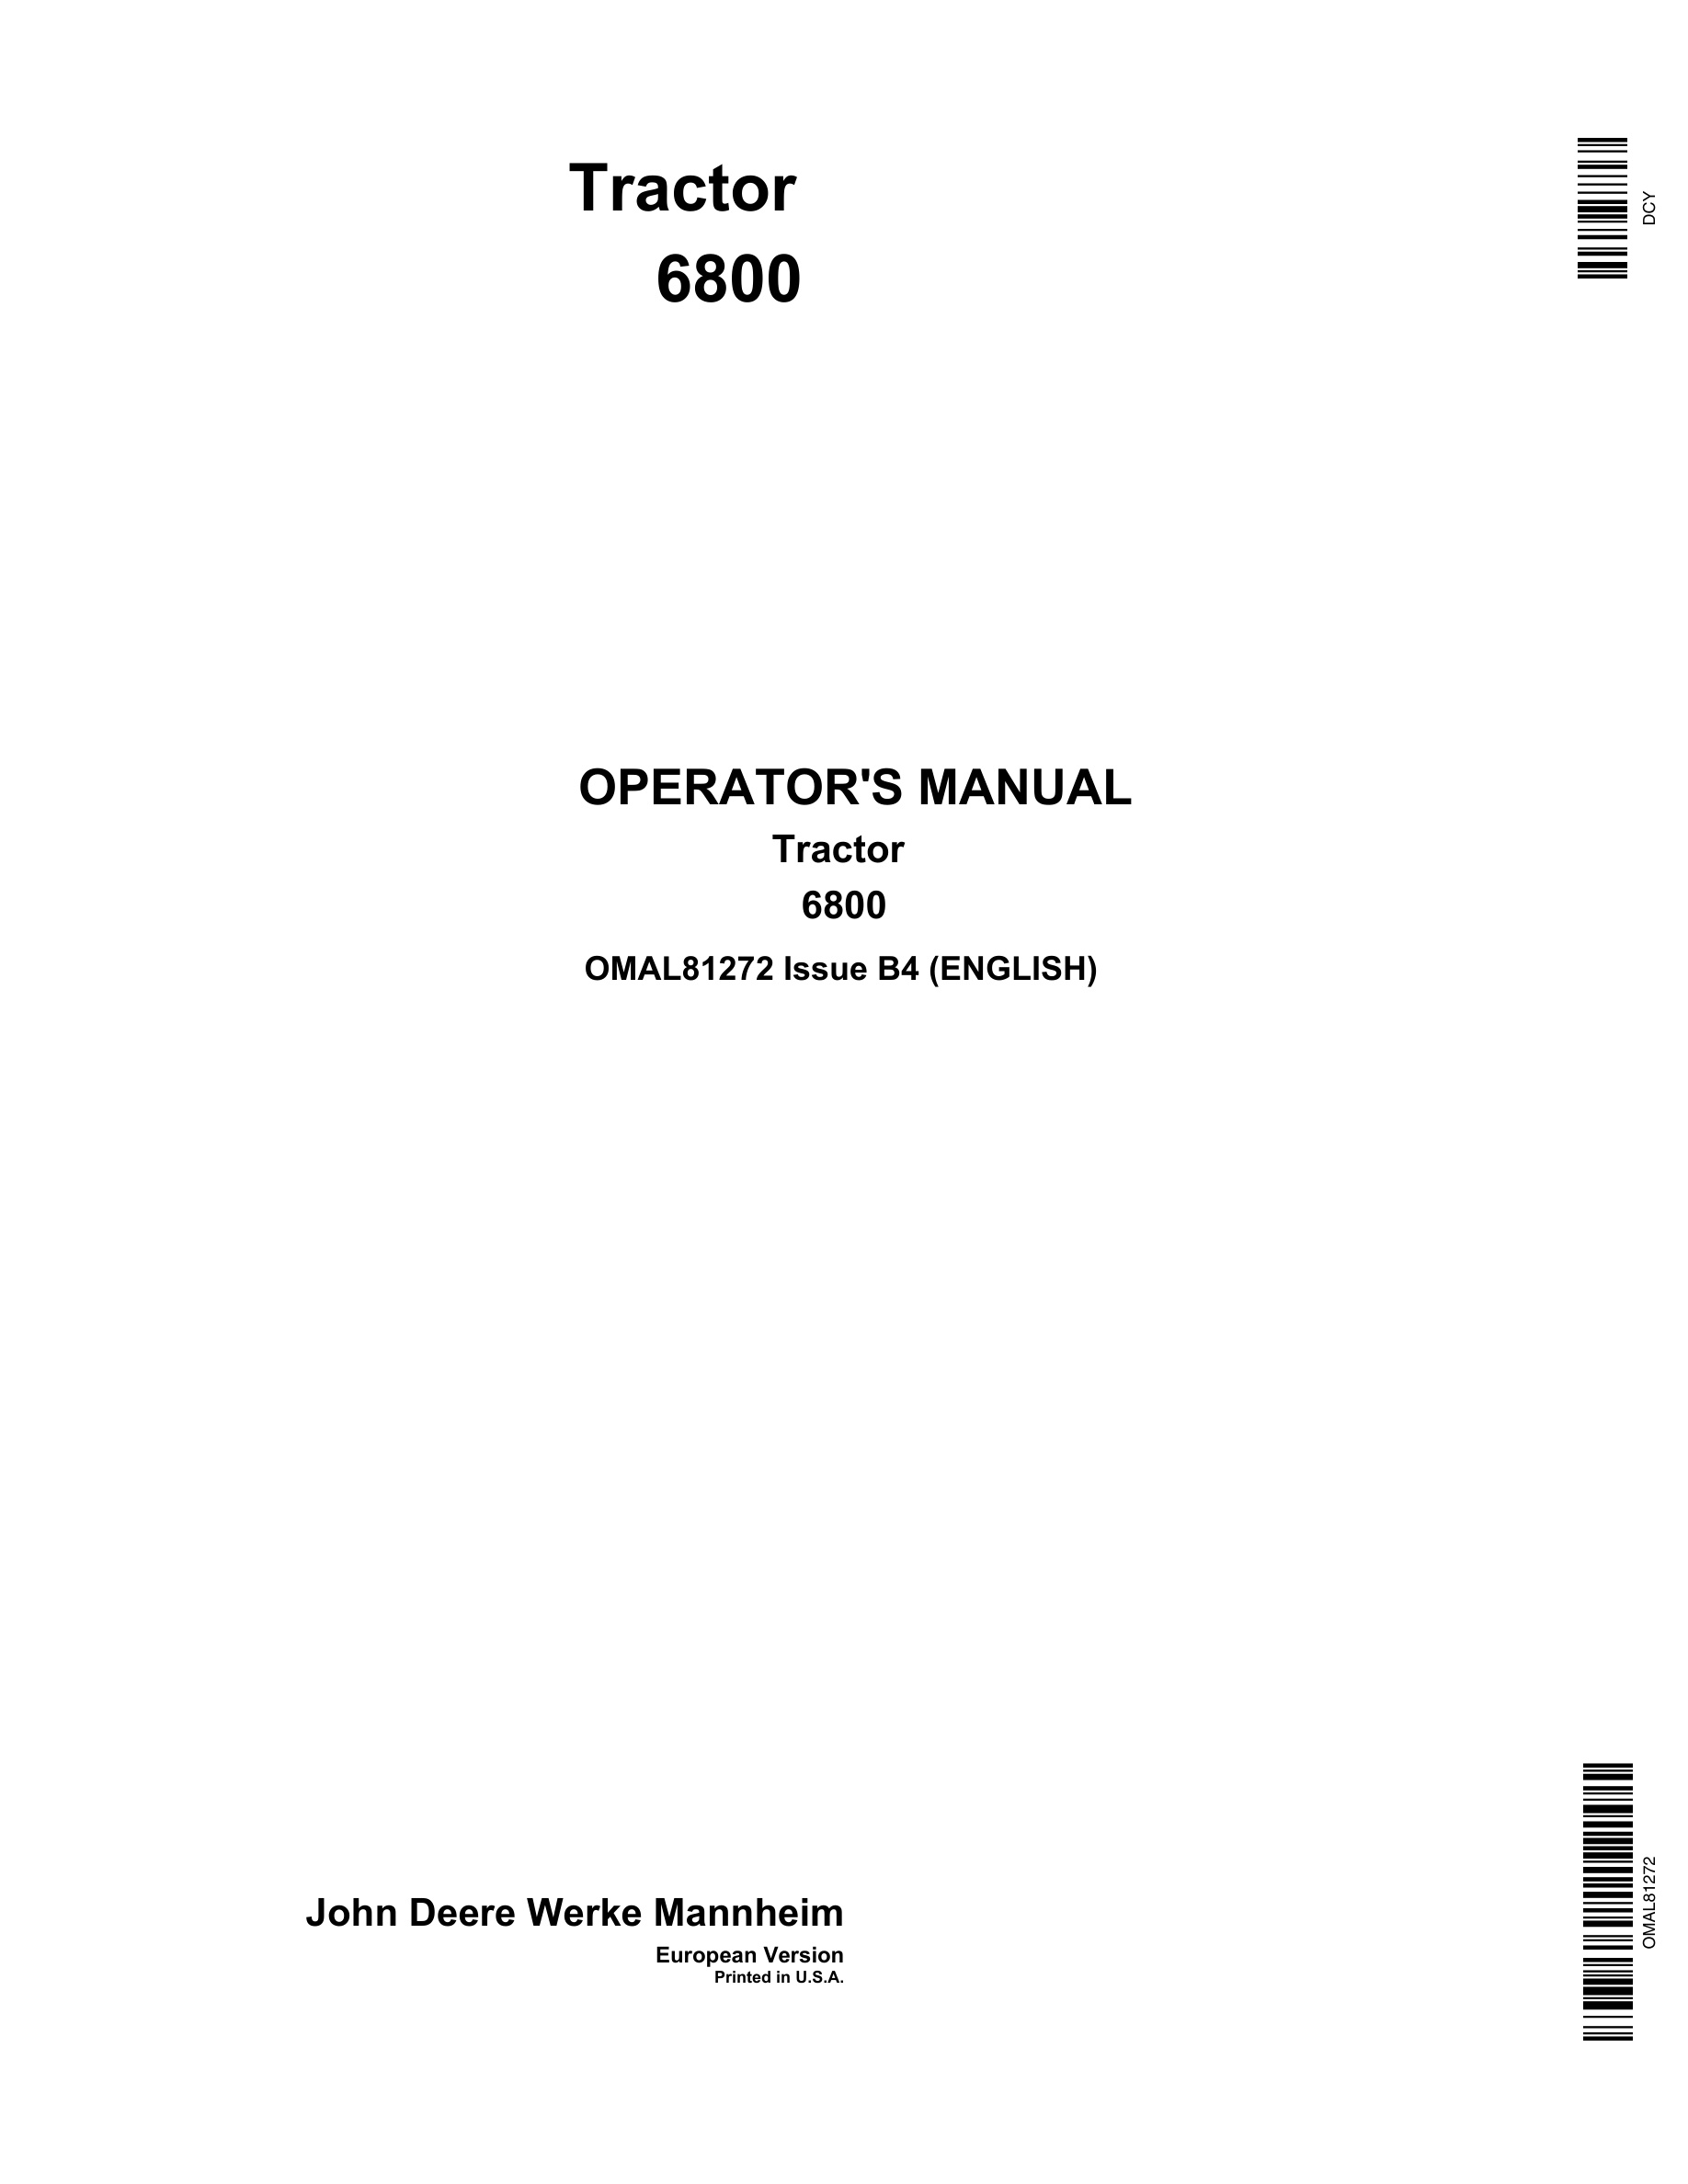 John Deere 6800 Tractors Operator Manual MAl81272-1